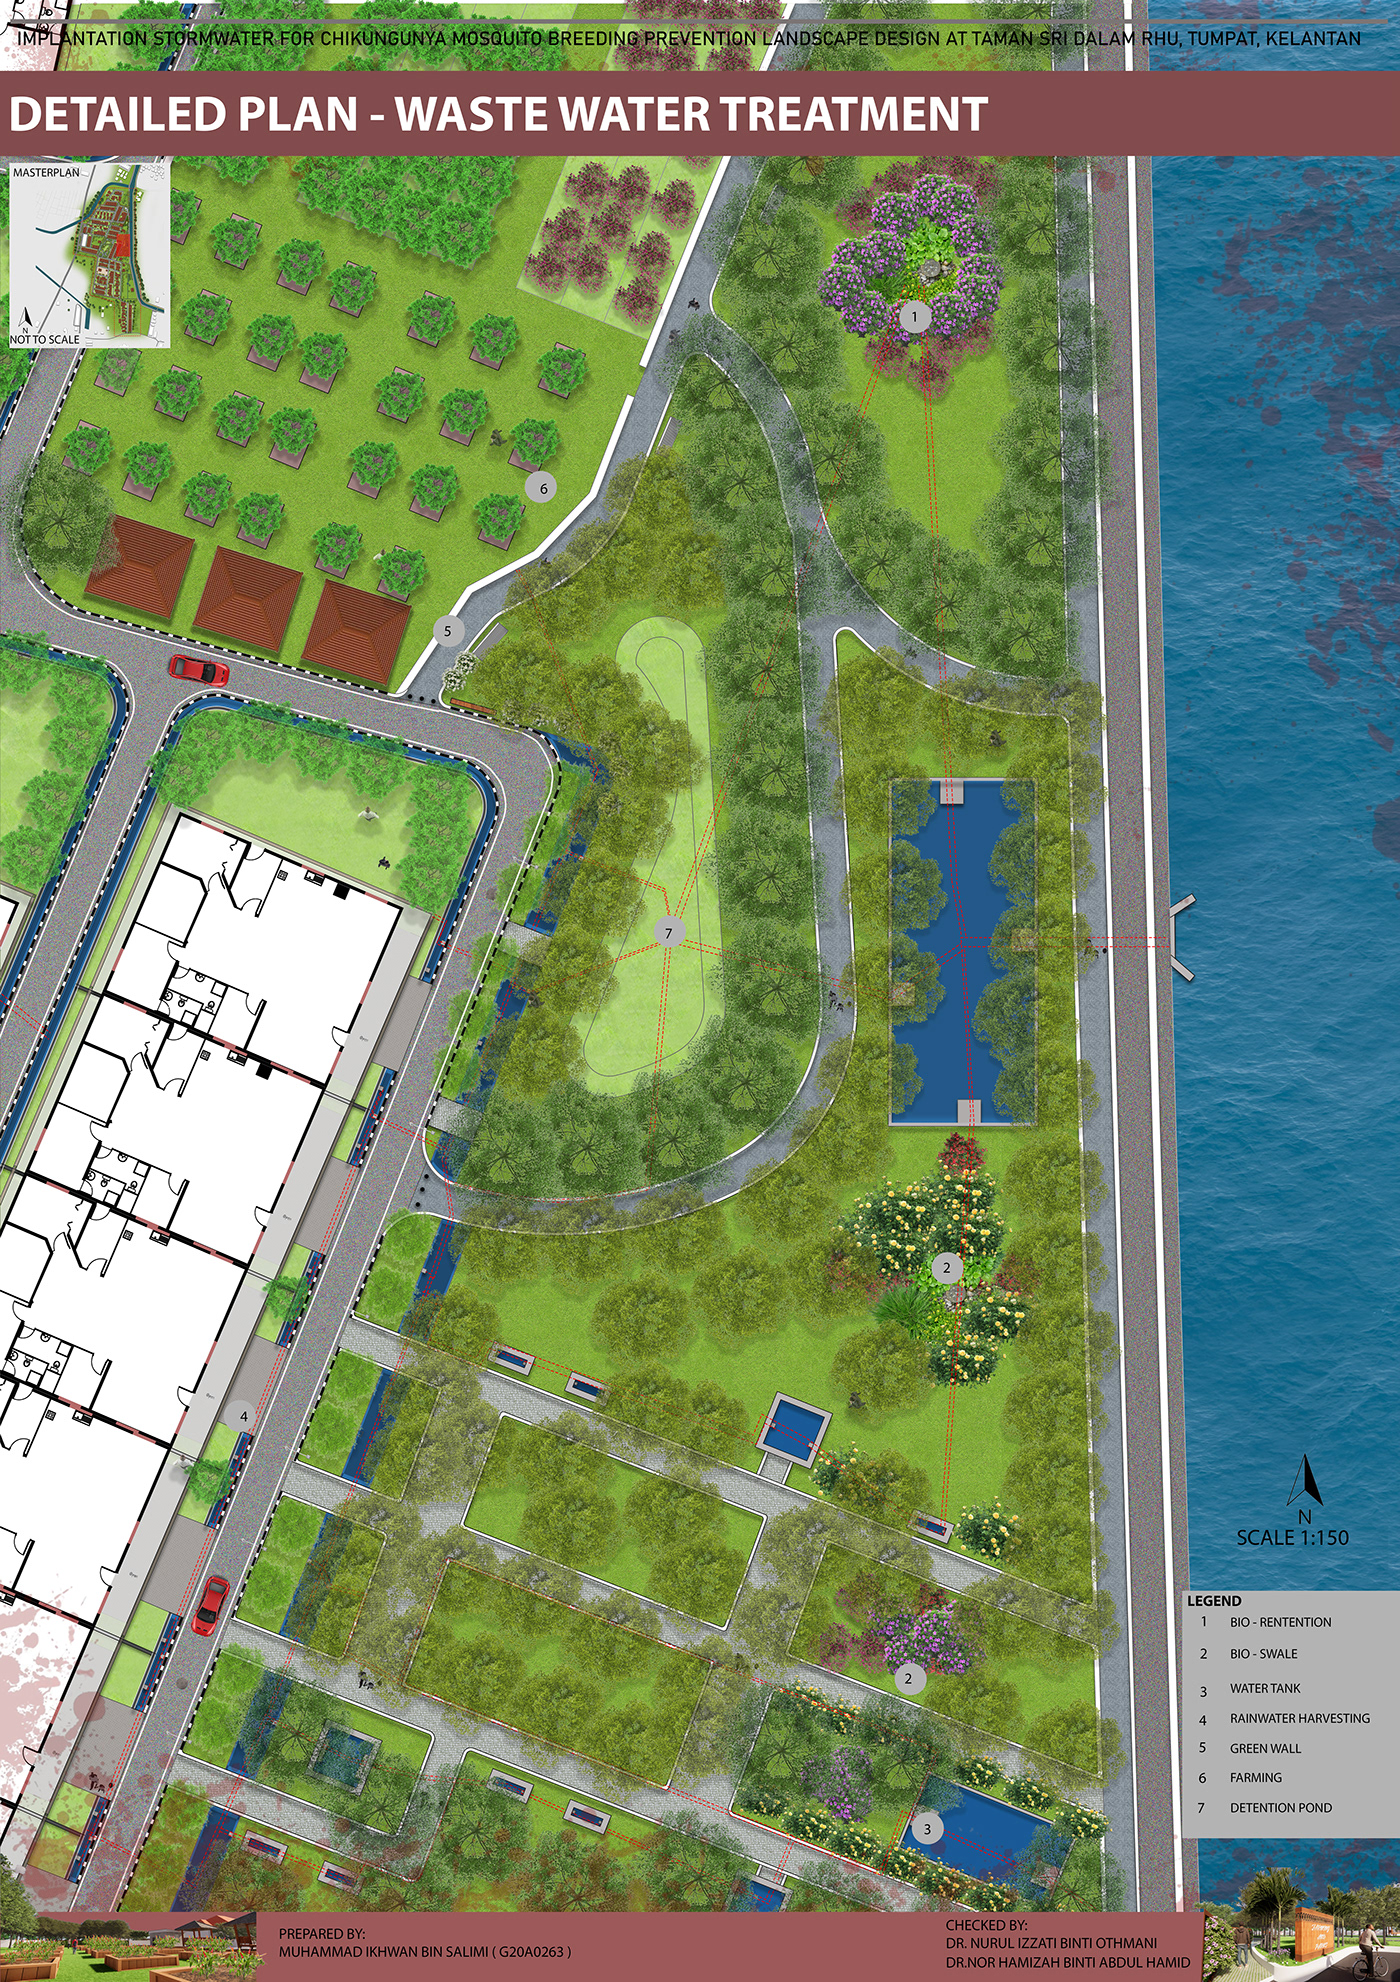 photoshop AutoCAD SketchUP enscape treatment design Landscape Architecture  Landscape study